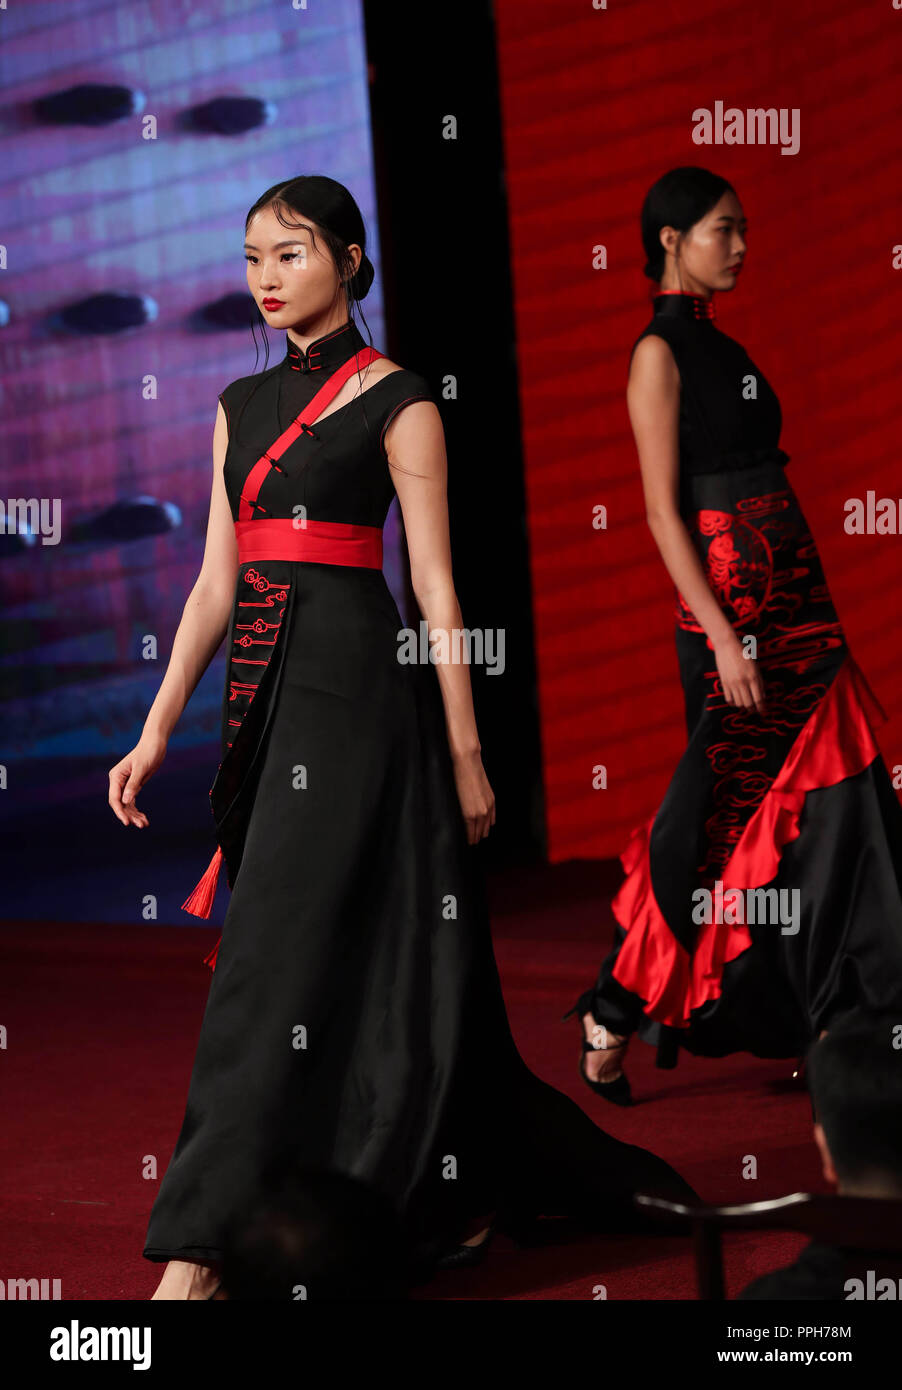 (180926) -- DAYI, le 26 septembre 2018 (Xinhua) -- présenter les modèles traditionnels chinois, cheongsam robe femmes également connu sous le nom de Qipao cheongsam, lors d'un concours de dessin à un théâtre à l'ancienne ville de Anren à Chengdu, dans le sud-ouest de la province chinoise du Sichuan, le 26 septembre 2018. (Xinhua/Jiang Hongjing) (mp) Banque D'Images